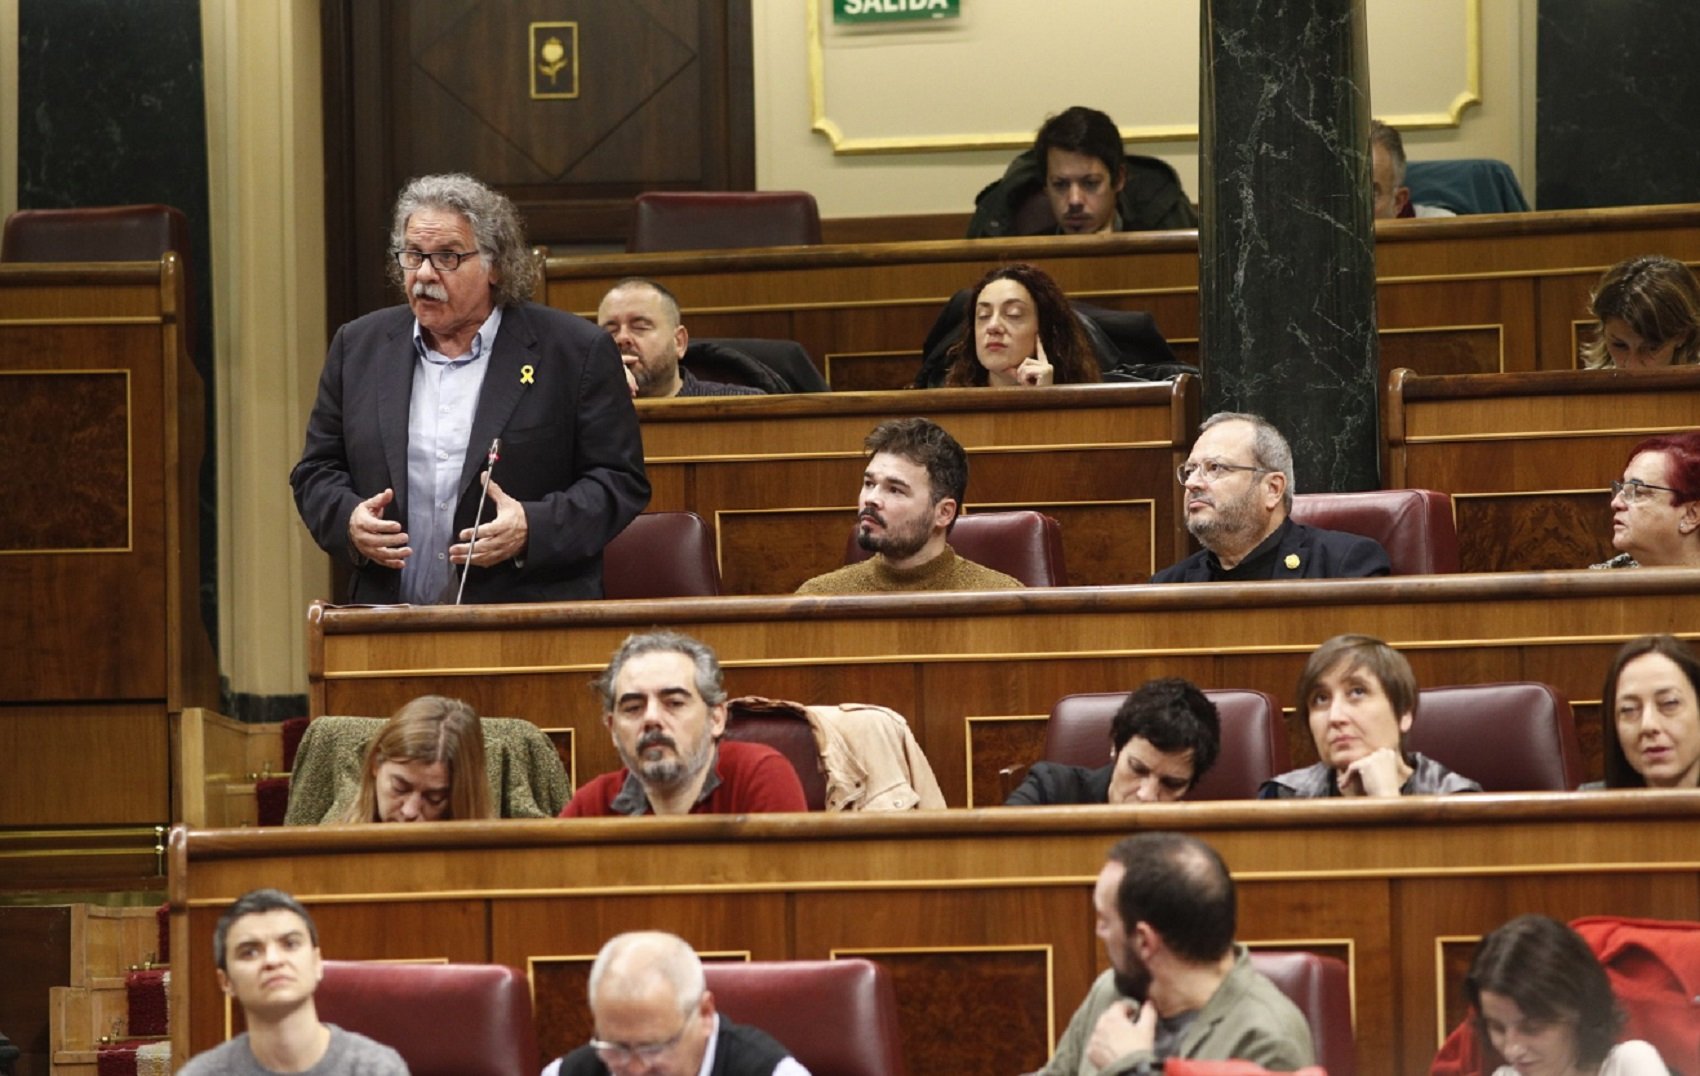 Tardà rechaza el frente común de Torra a las europeas: "Las izquierdas tienen que ir con las izquierdas"